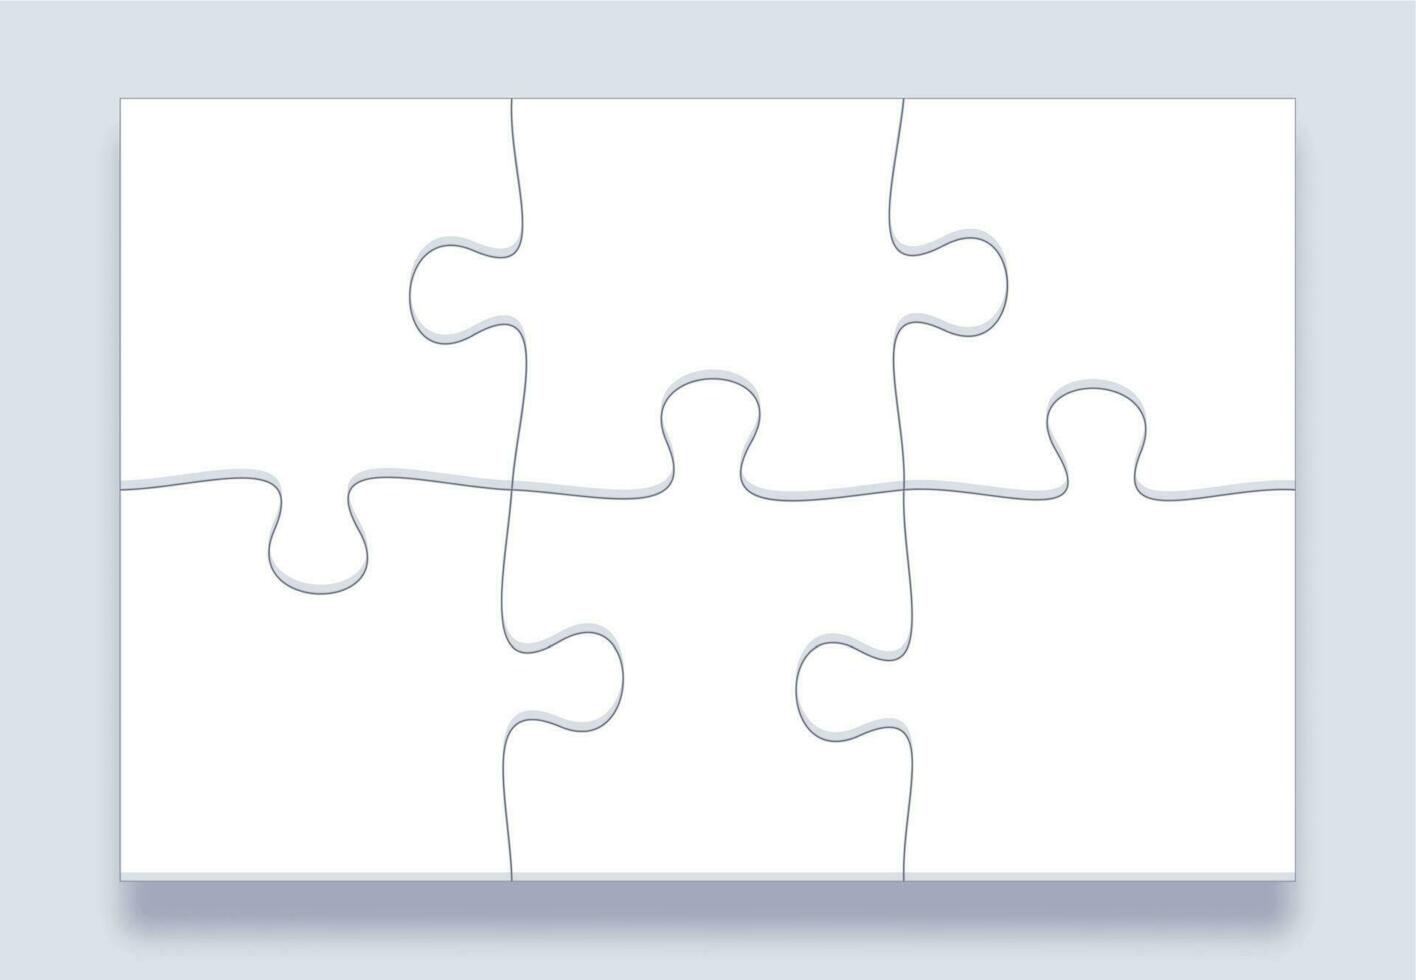 quebra-cabeças azulejos. quebra-cabeças grade, quebra-cabeças detalhes e conectado enigma peças marketing o negócio comunicação conceito vetor modelo